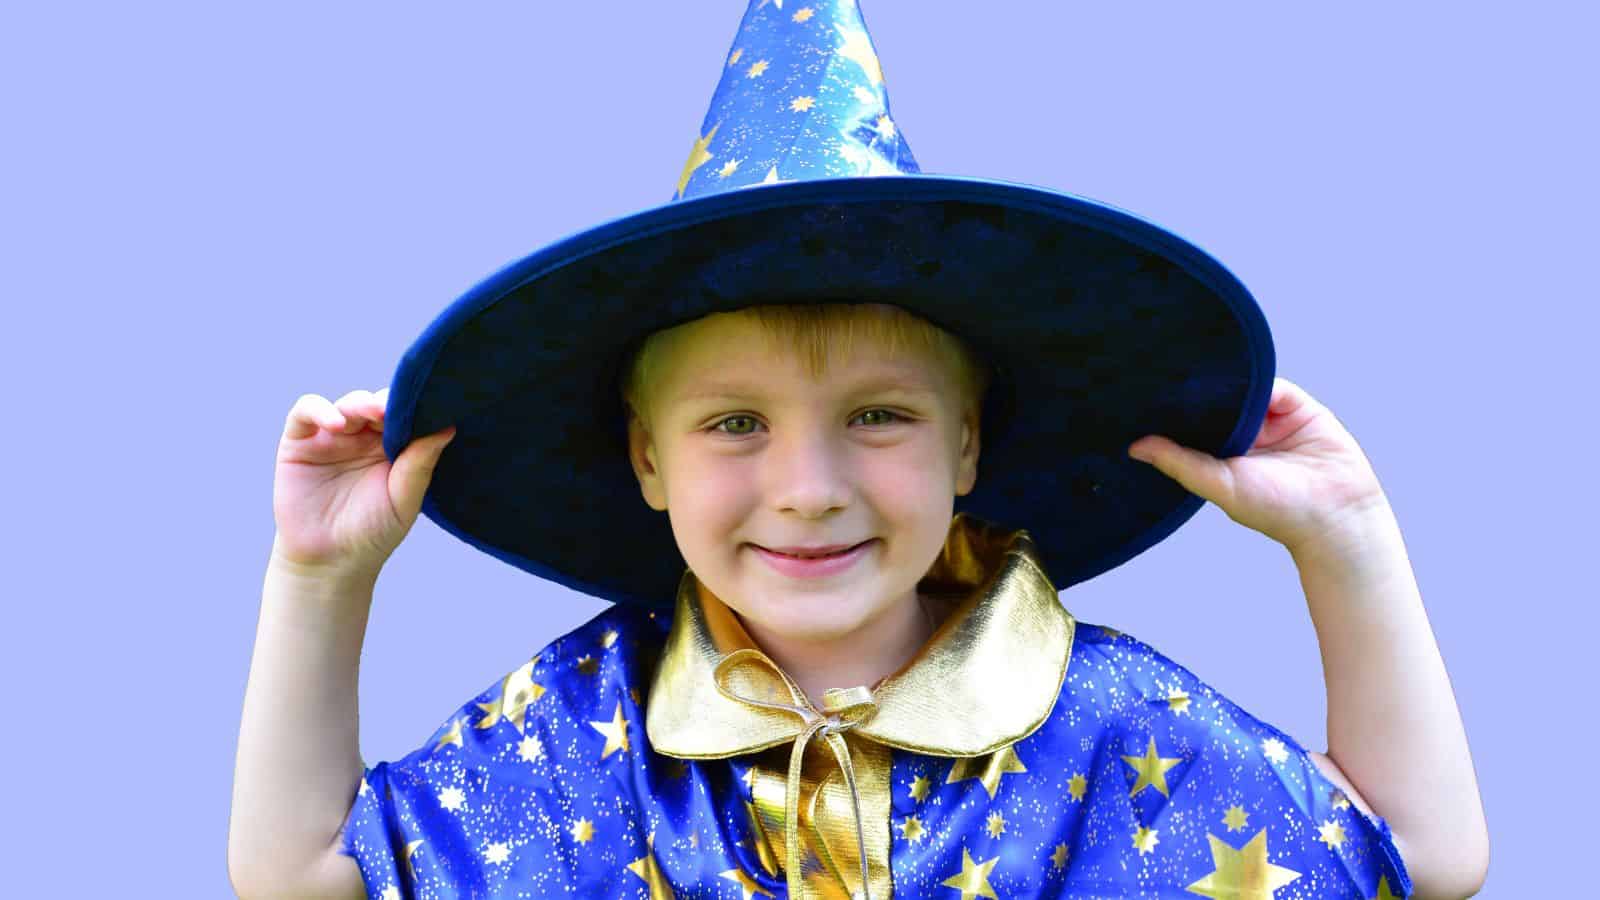 magician costume child